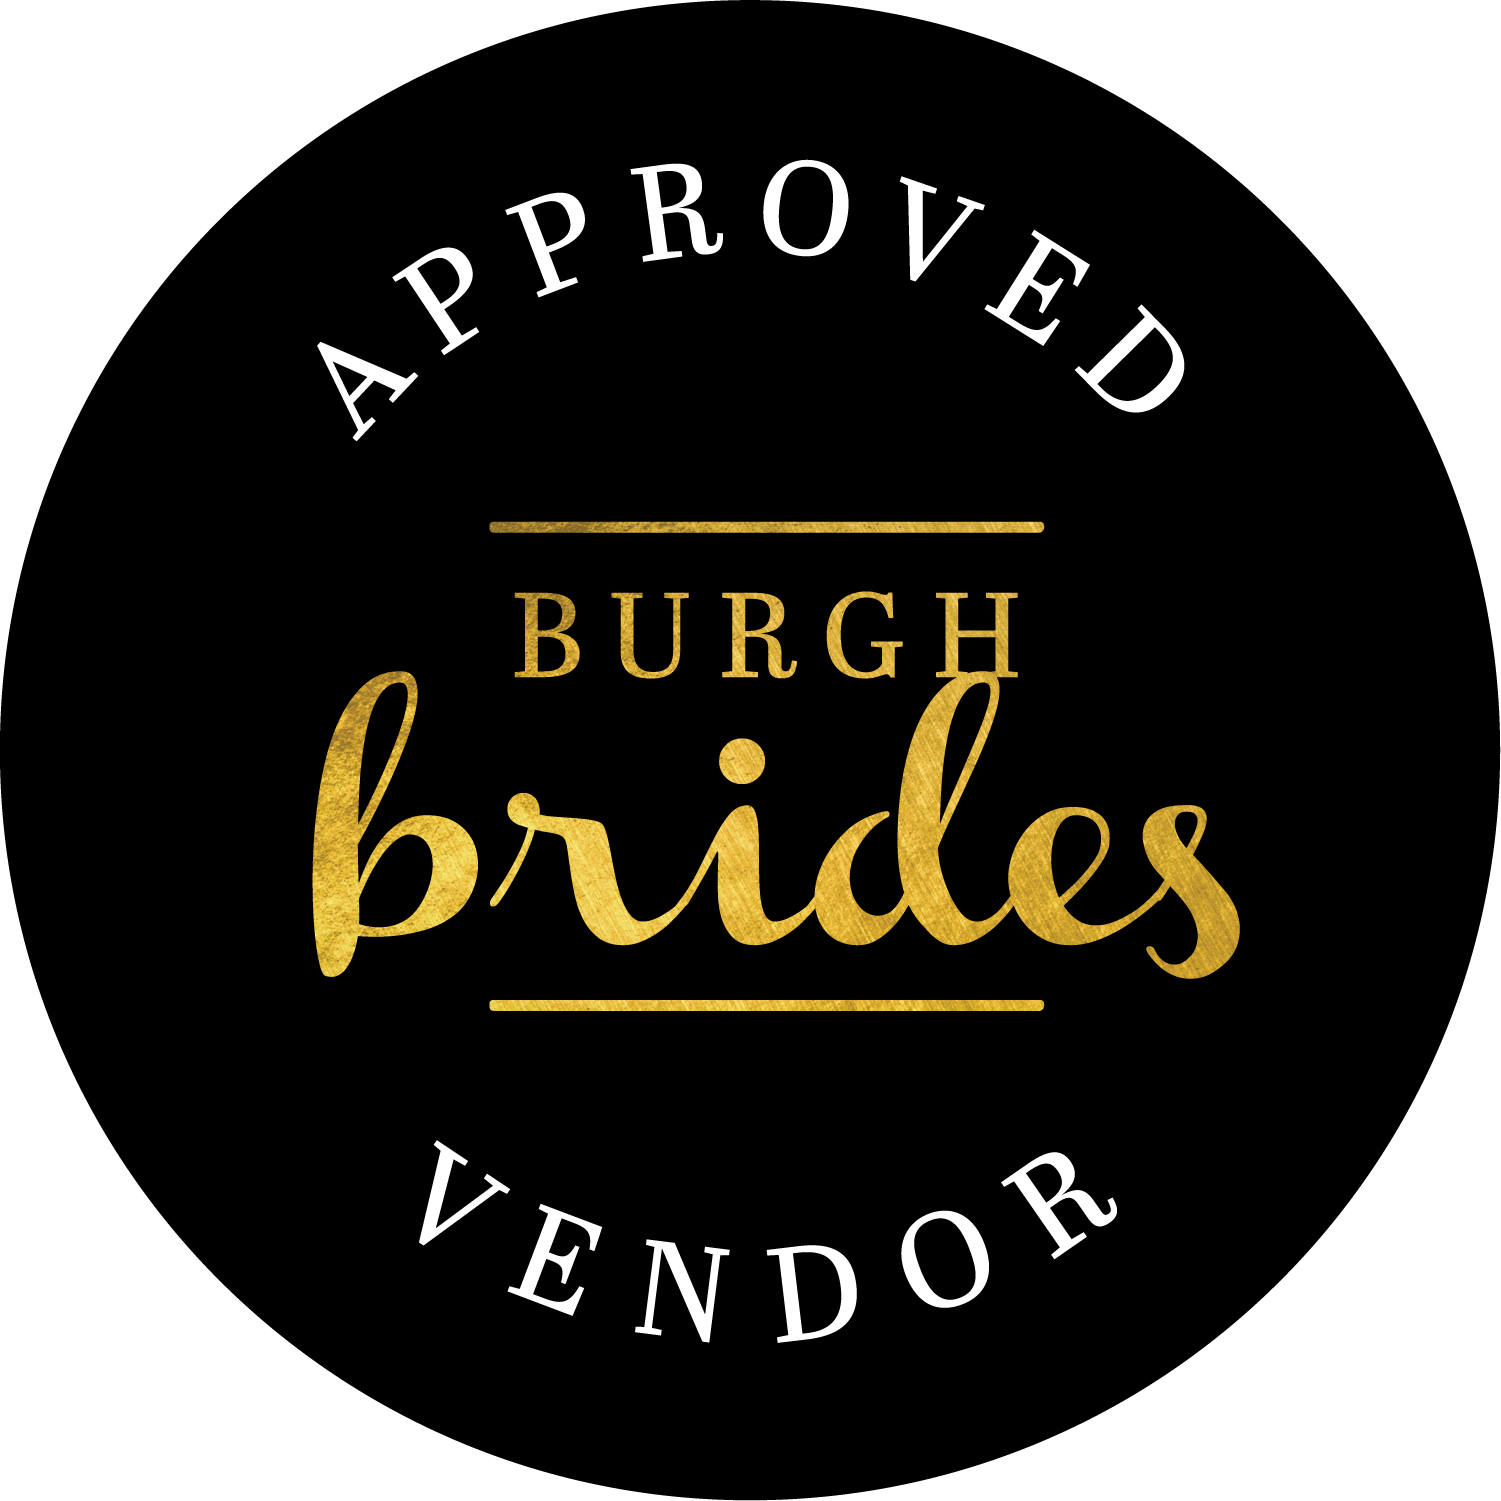 Approved Burgh Brides Vendor